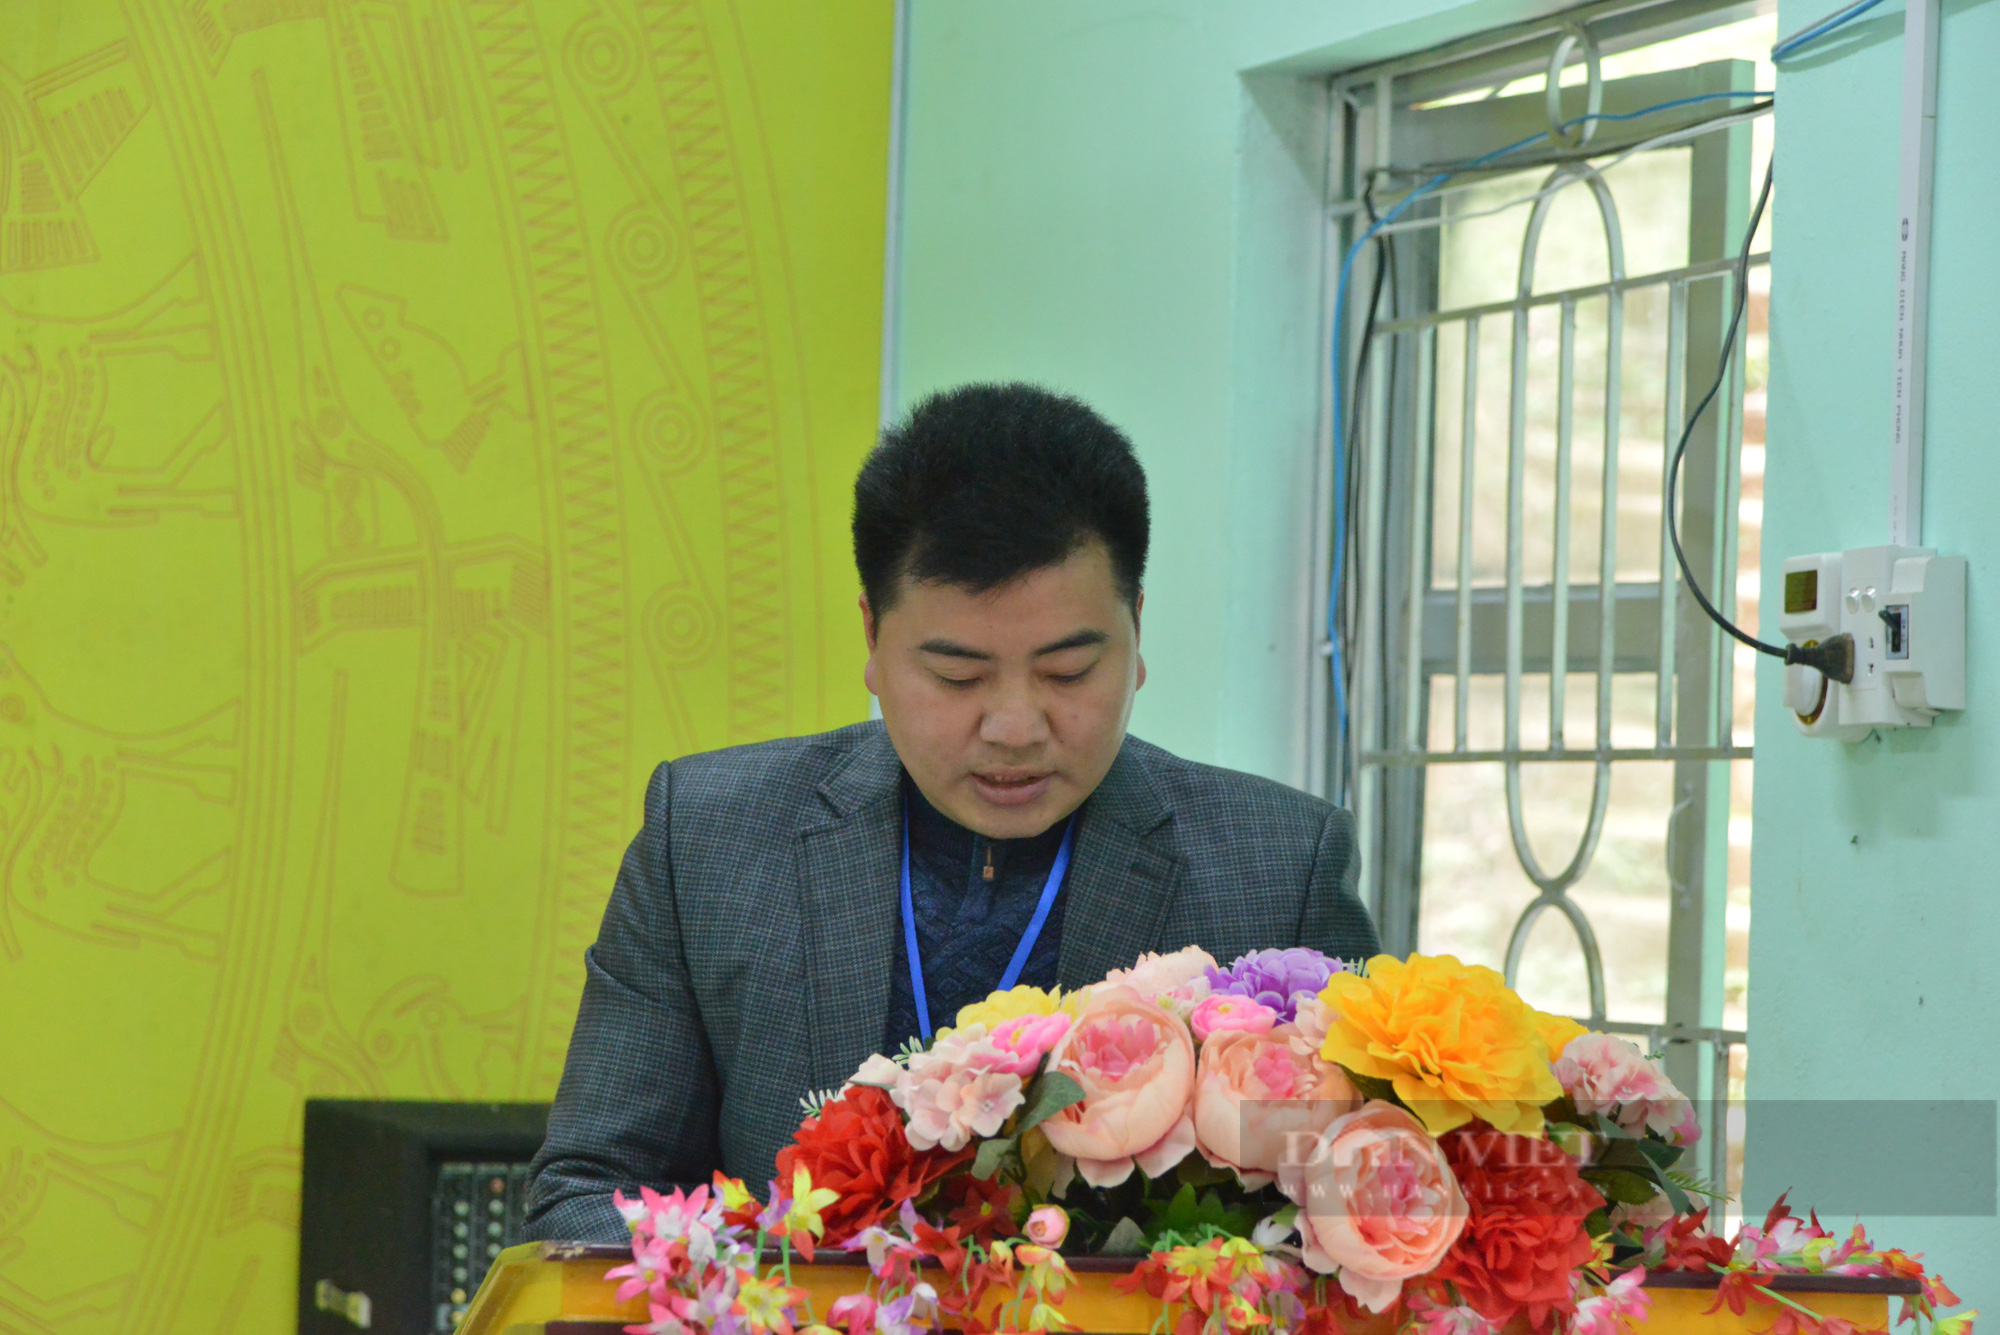 Phó Chủ tịch TƯ Hội NDVN Đinh Khắc Đính: Hỗ trợ nông dân vùng cao chuyển tư duy sản xuất sang kinh tế nông nghiệp- Ảnh 2.